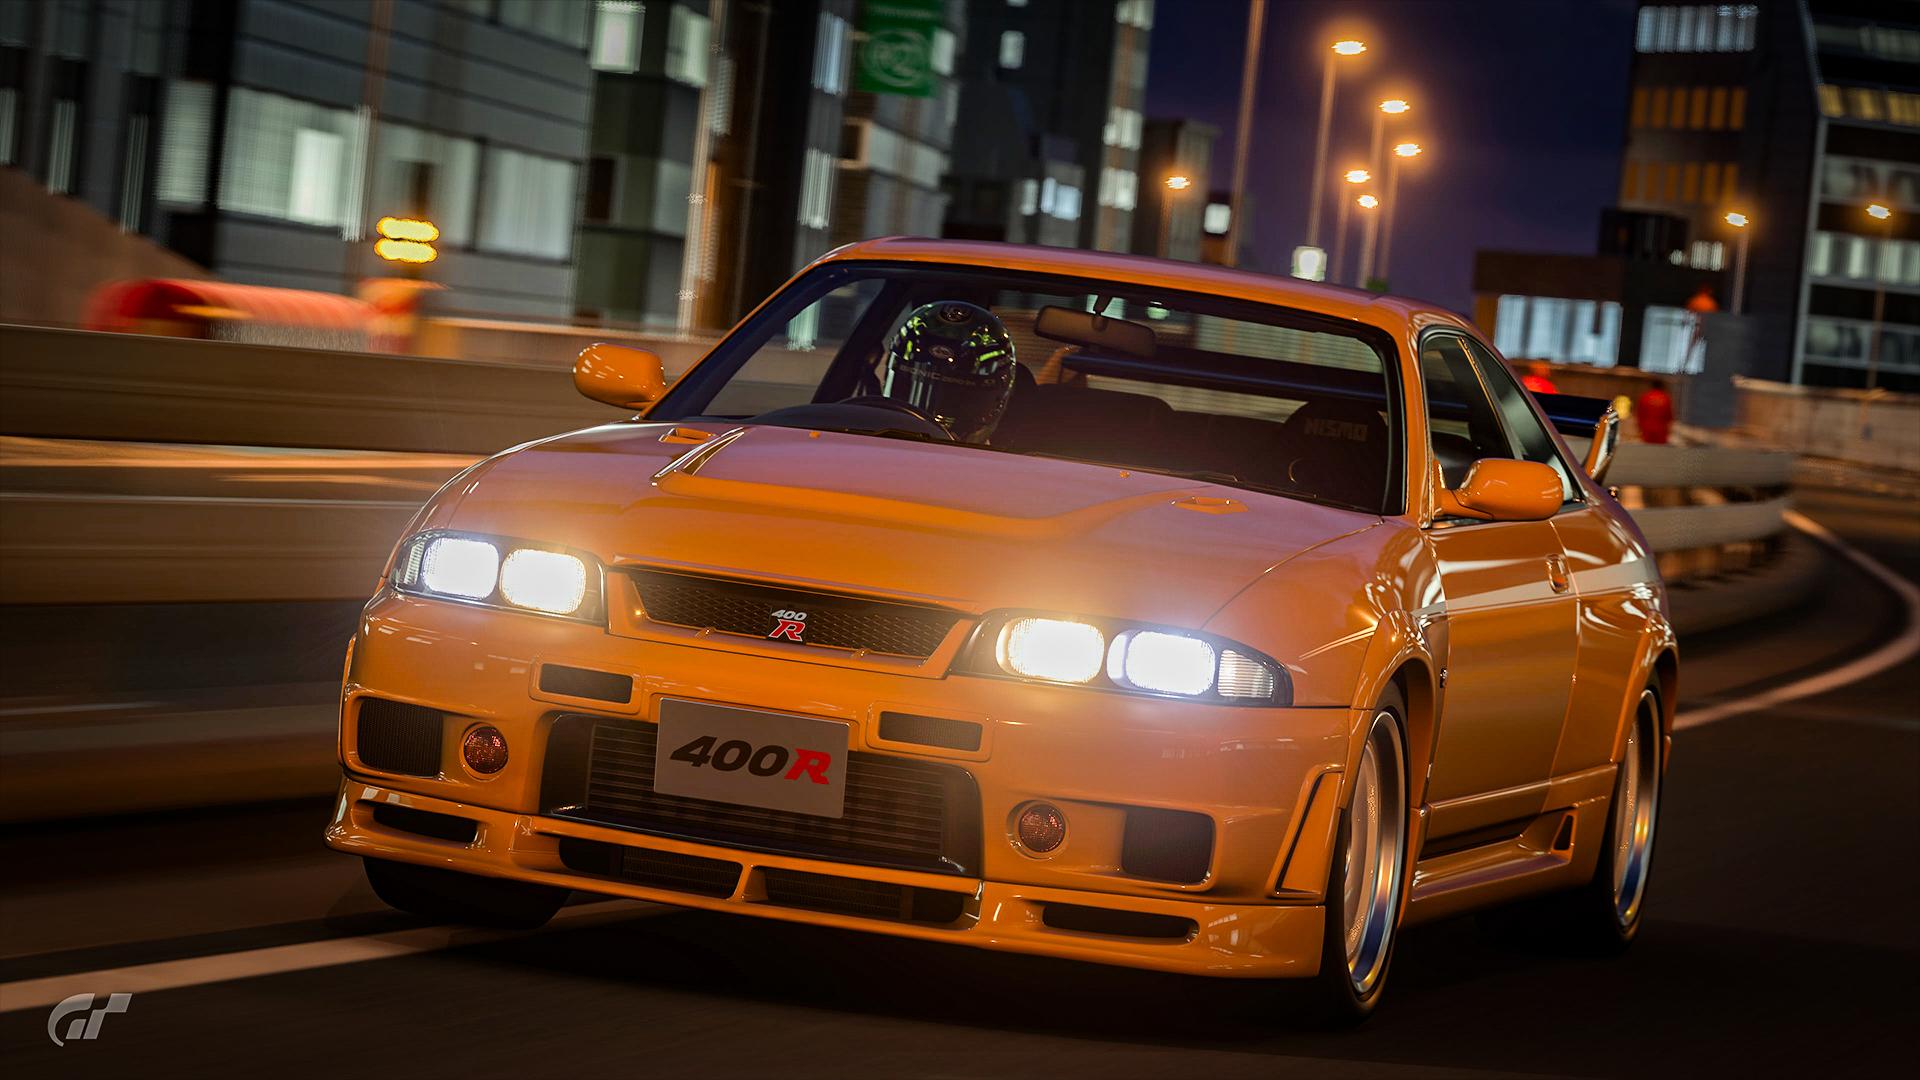 Mostrando o GT-R Nismo do filme Gran Turismo no jogo 